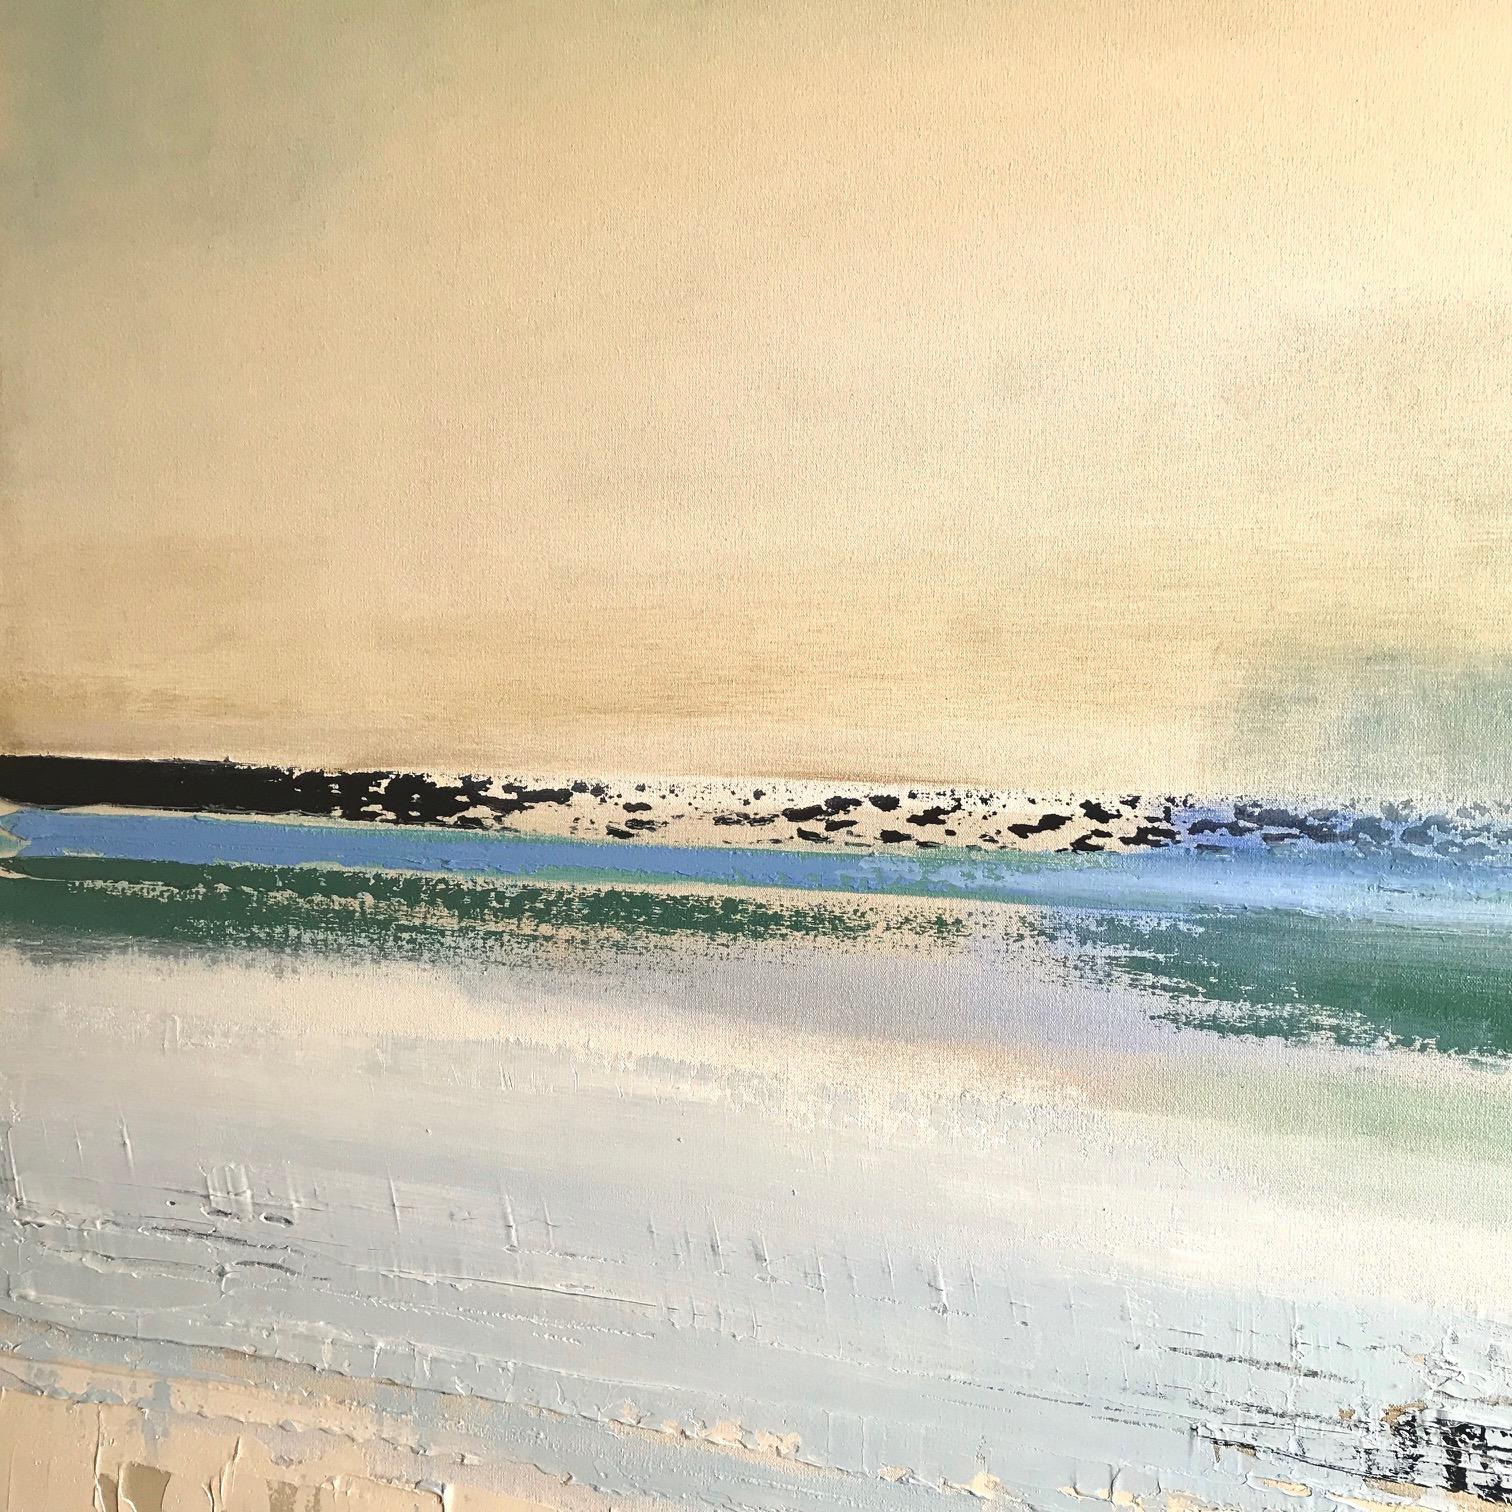 Dieses Original von Barbara Sussberg in Öl auf Leinen ist eine Meereslandschaft in sanften Blautönen, Grüntönen und gebrochenem Weiß.  Sie ist kühn und doch ruhig und zeichnet sich durch ihren intuitiven Sinn für Farbe, Licht und strukturelle